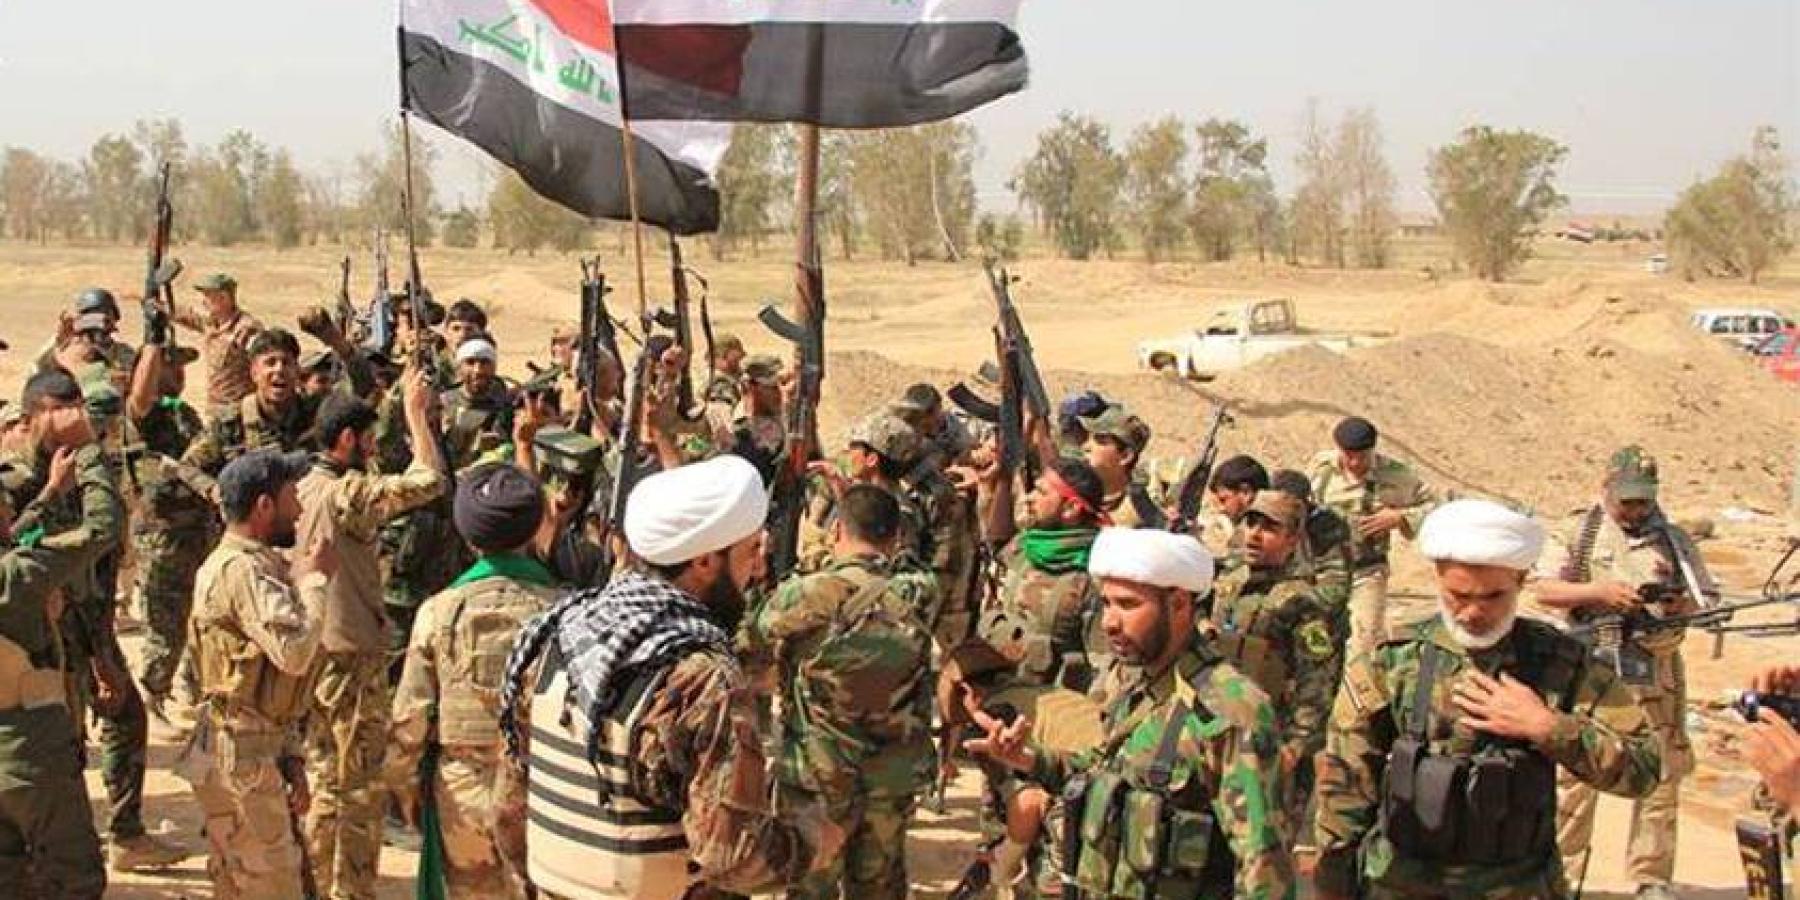 مقتل عشرة من /داعش/ الارهابي واصابة العشرات على يد مجاهدي فرقة الامام علي القتالية البطلة